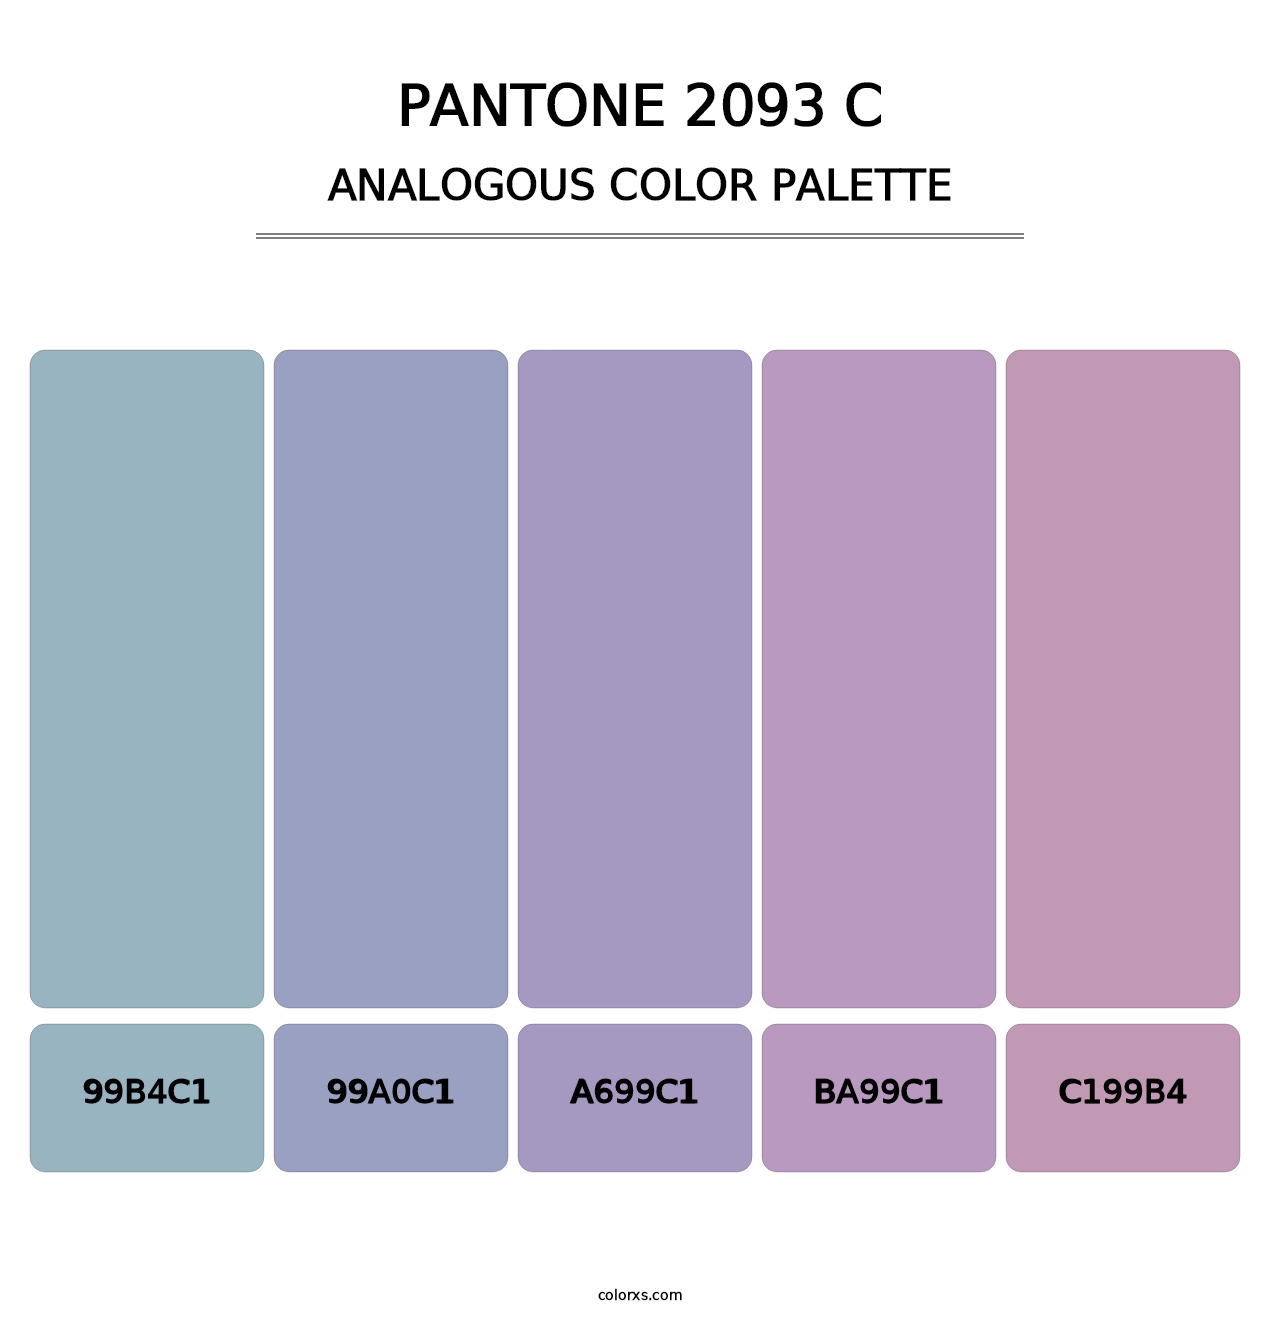 PANTONE 2093 C - Analogous Color Palette